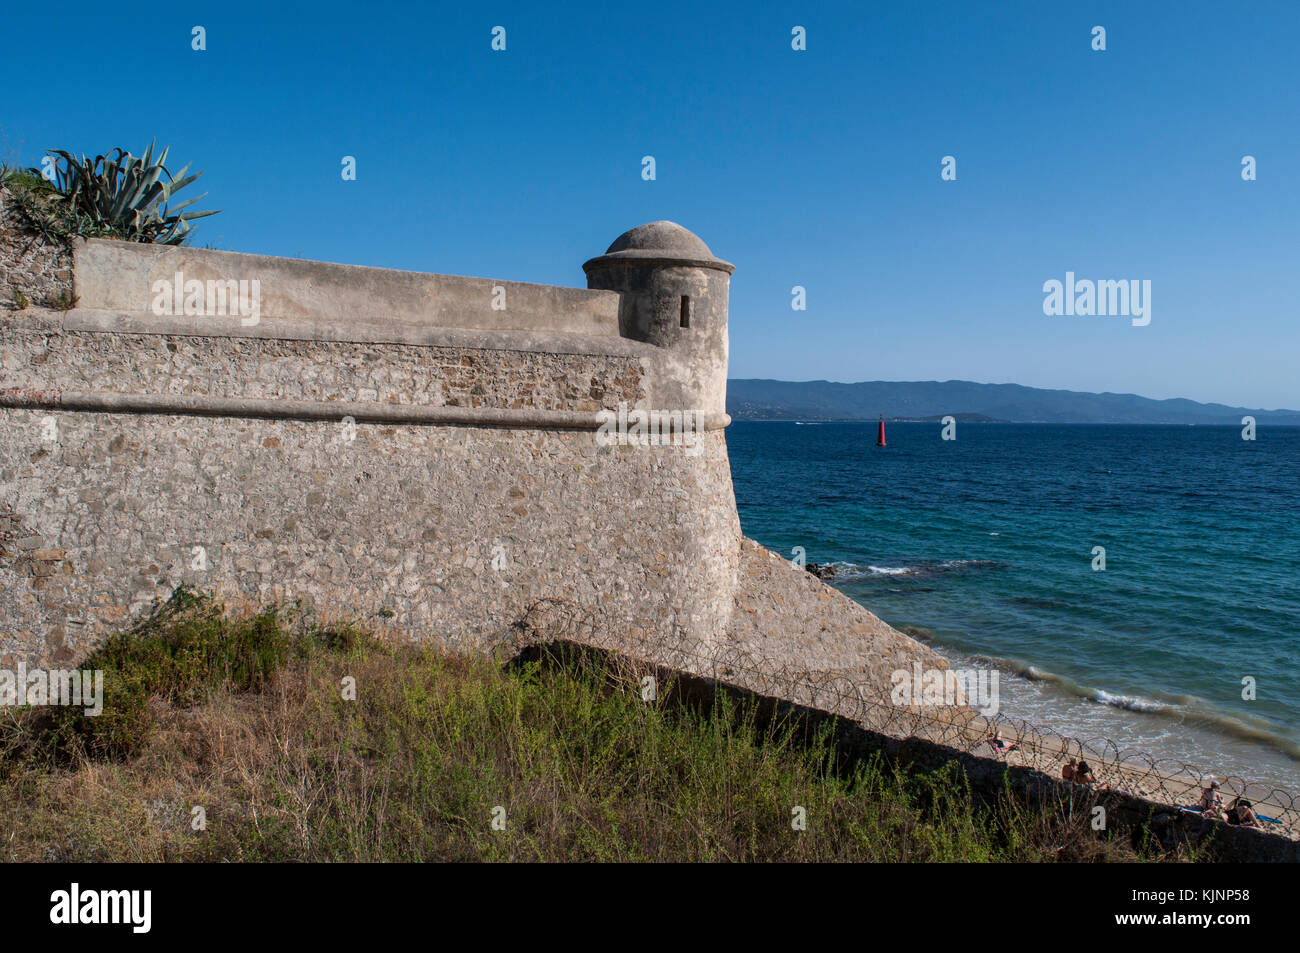 Ajaccio, Córcega: murallas de la ciudadela del siglo XV, la fortaleza militar y prisión durante la II Guerra Mundial, el mar mediterráneo y playa urbana Foto de stock